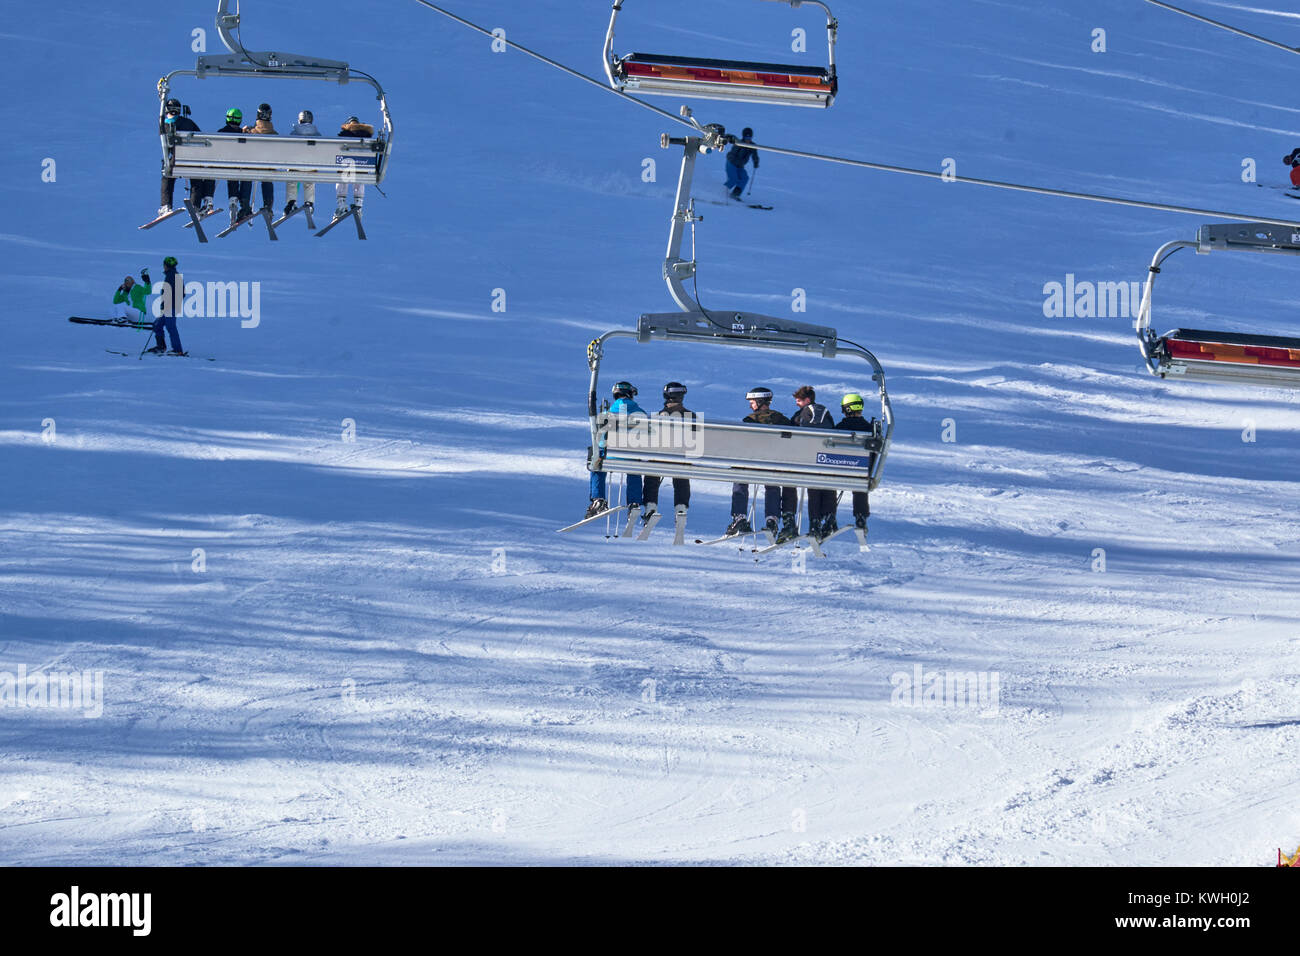 WINTERBERG, Deutschland - 15. FEBRUAR 2017: der Weg an die Spitze in einer entspannten Sesselbahn am Skikarussell Winterberg Stockfoto